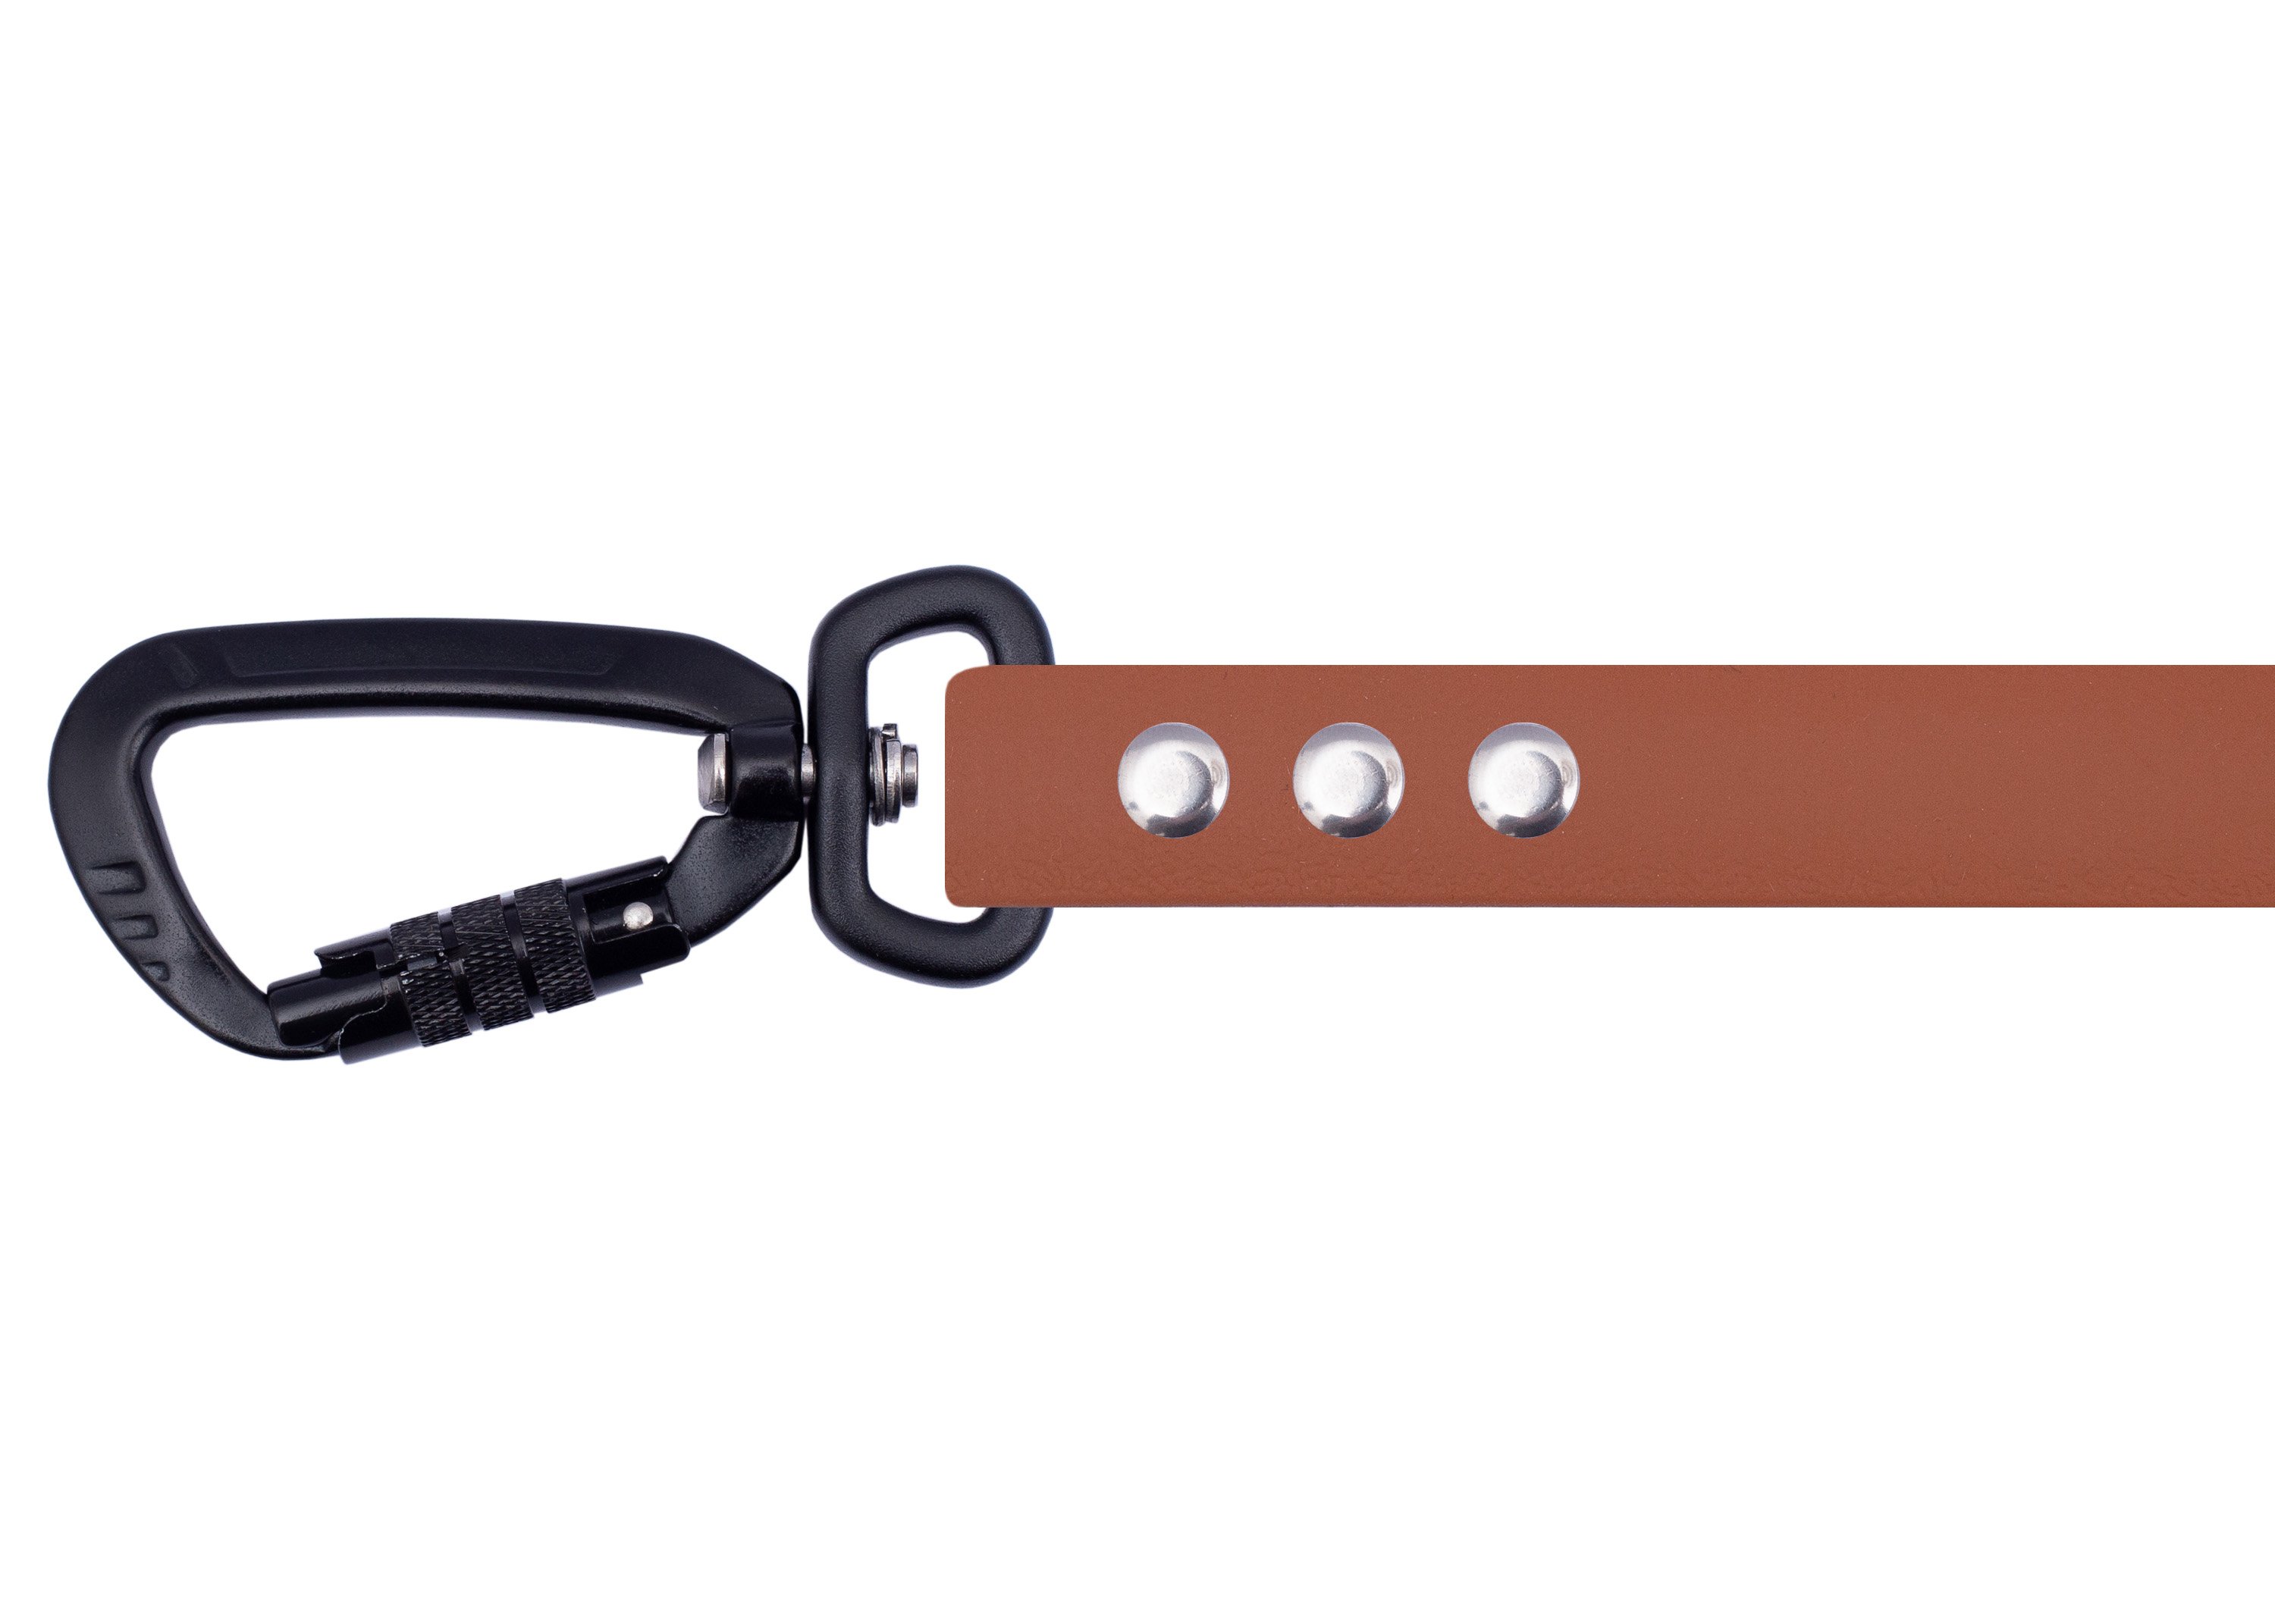 Biothane leash cognac black-16mm - safety carabiner-2m adjustable